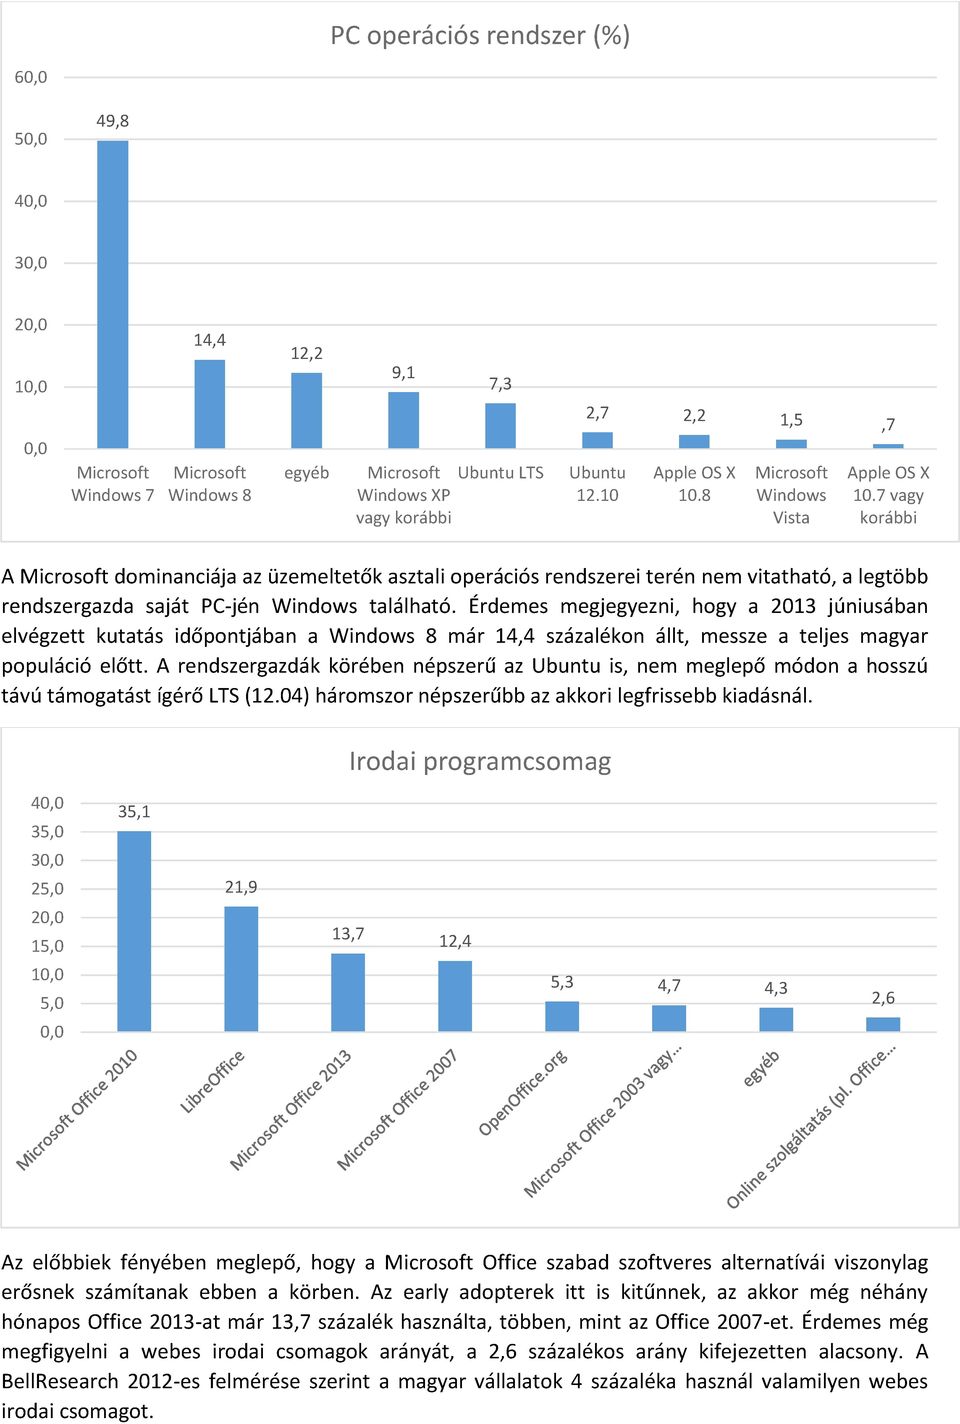 Érdemes megjegyezni, hogy a 2013 júniusában elvégzett kutatás időpontjában a Windows 8 már 14,4 százalékon állt, messze a teljes magyar populáció előtt.